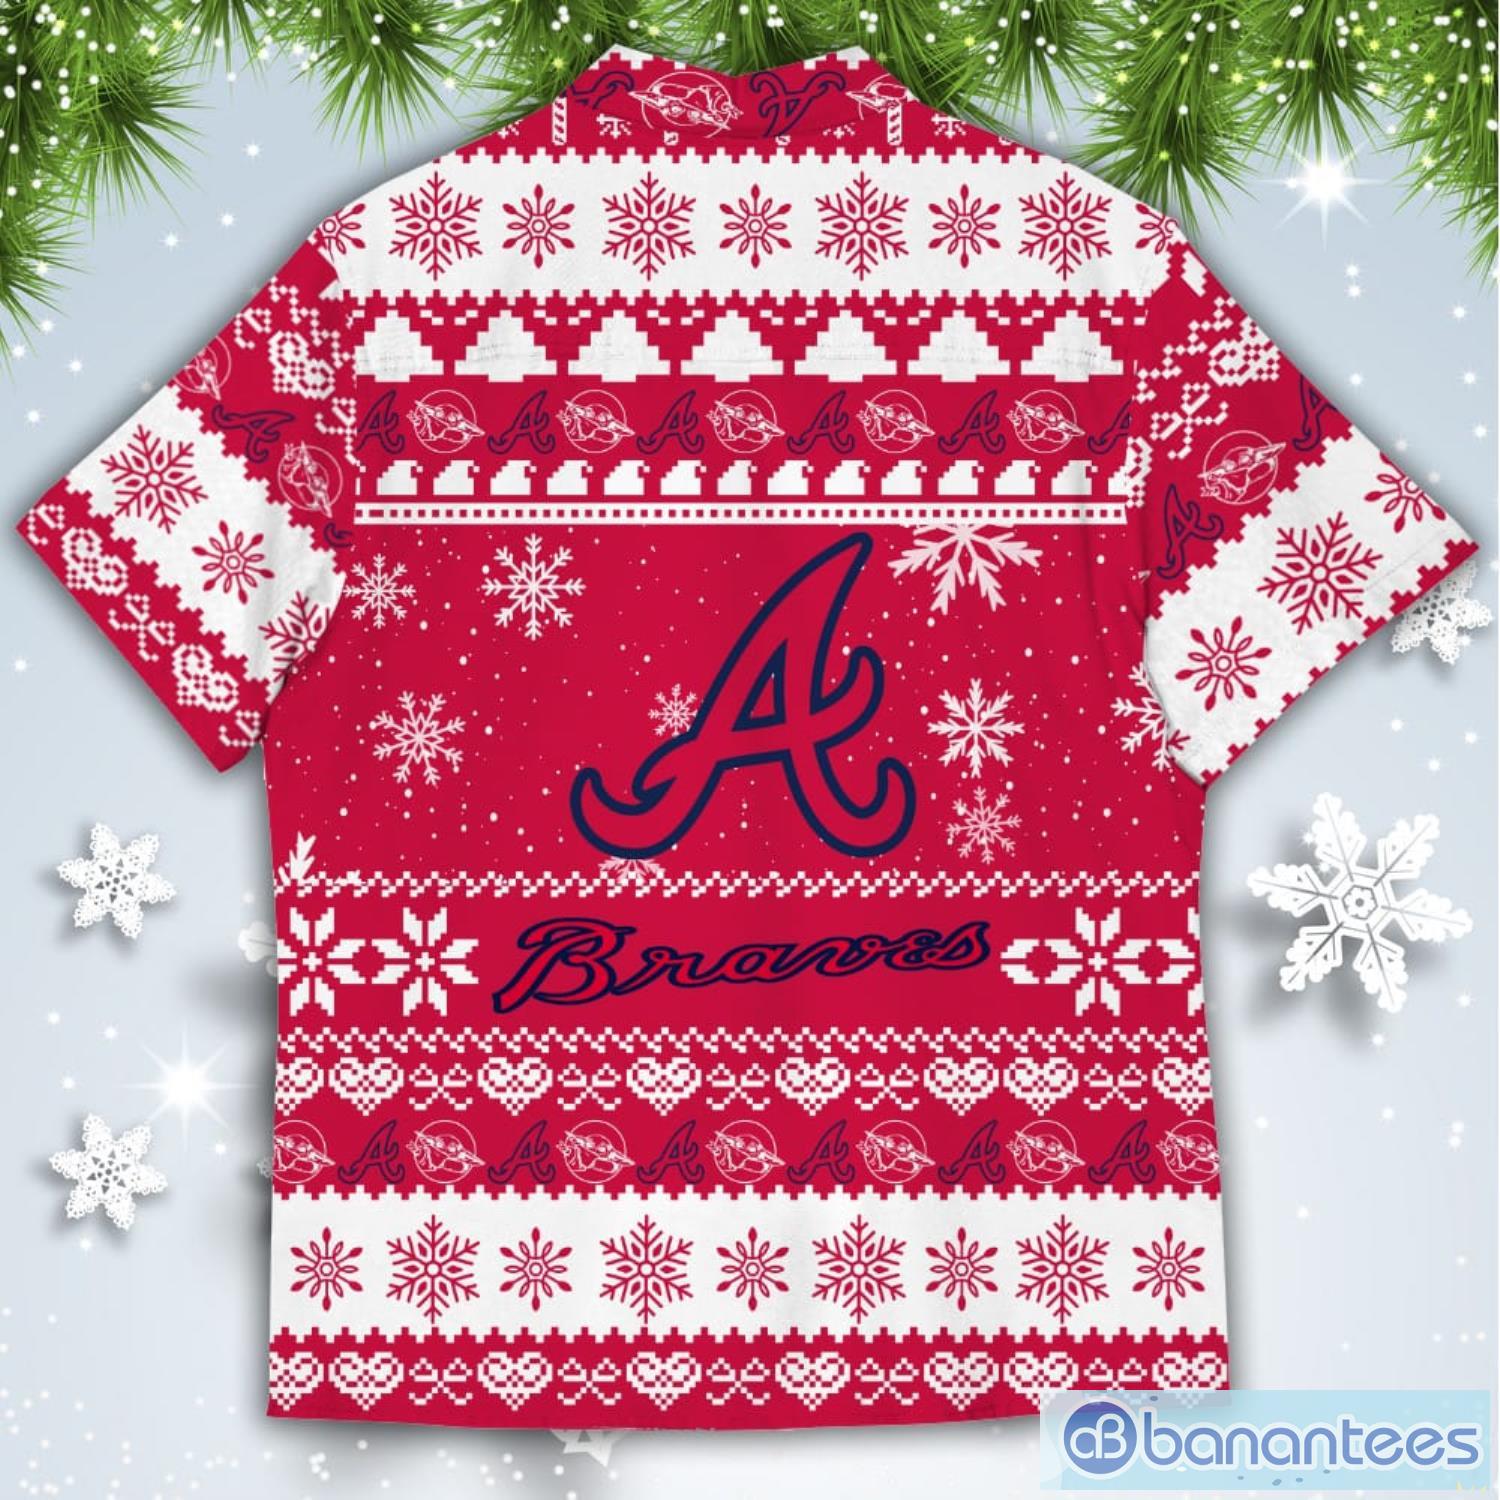 Atlanta Braves Baby Yoda Star Wars American Ugly Christmas Sweater Pattern  Hawaiian Shirt - Banantees